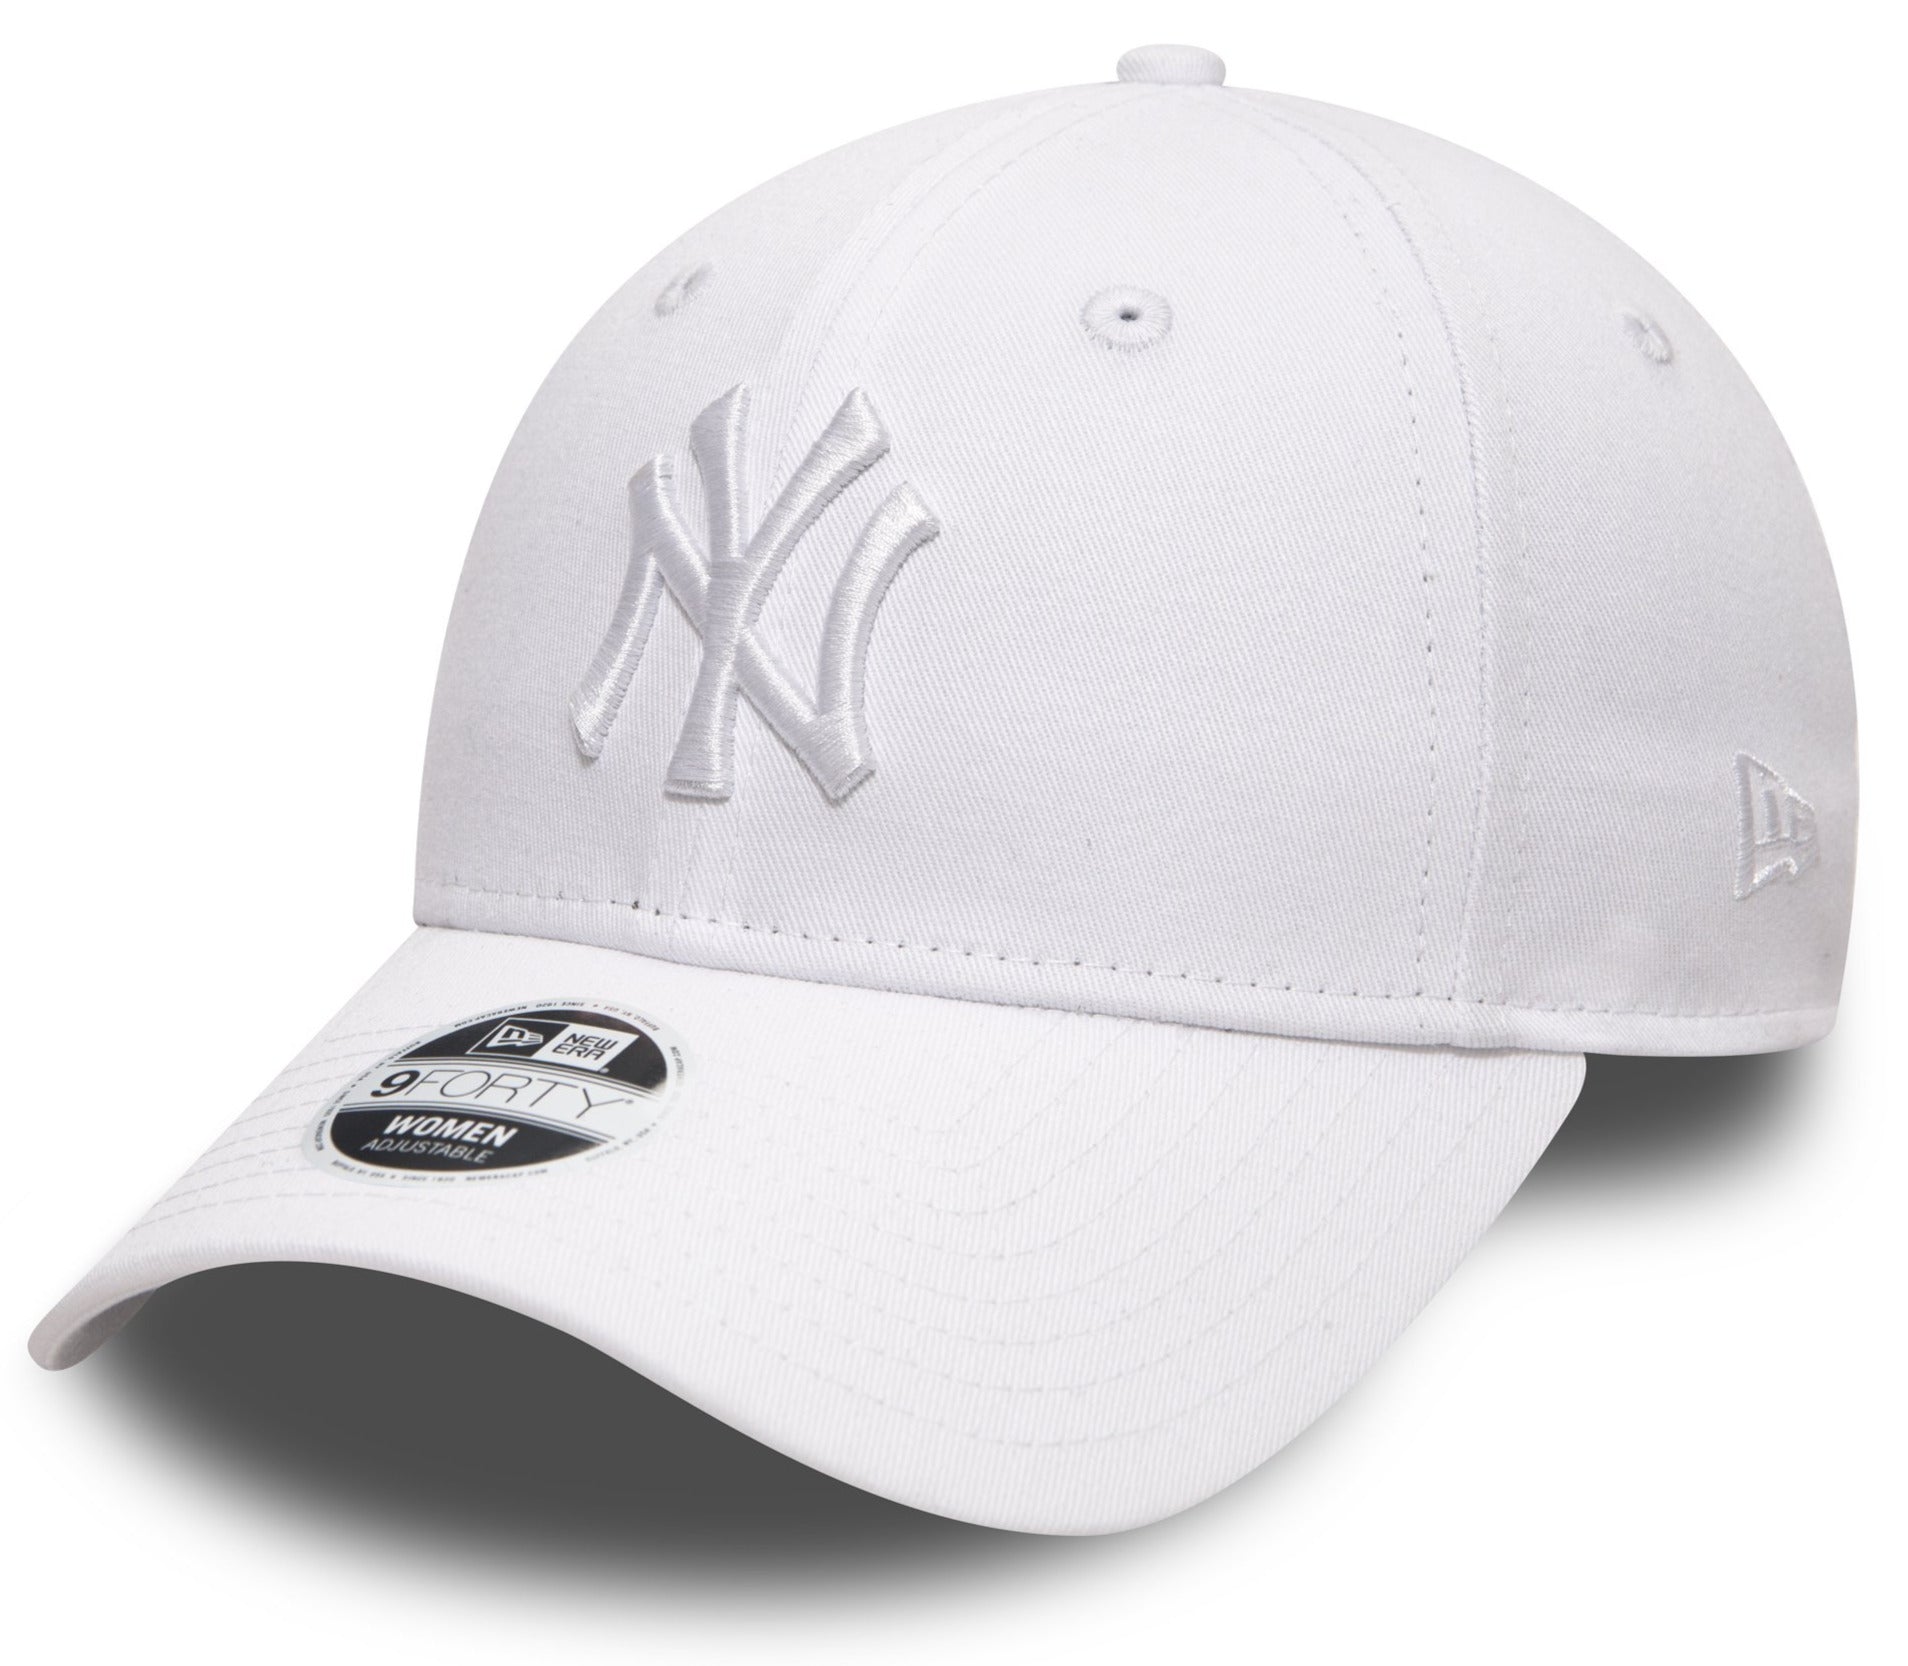 New Era 39thirty MLB League Basic NY Yankees Scarlet White